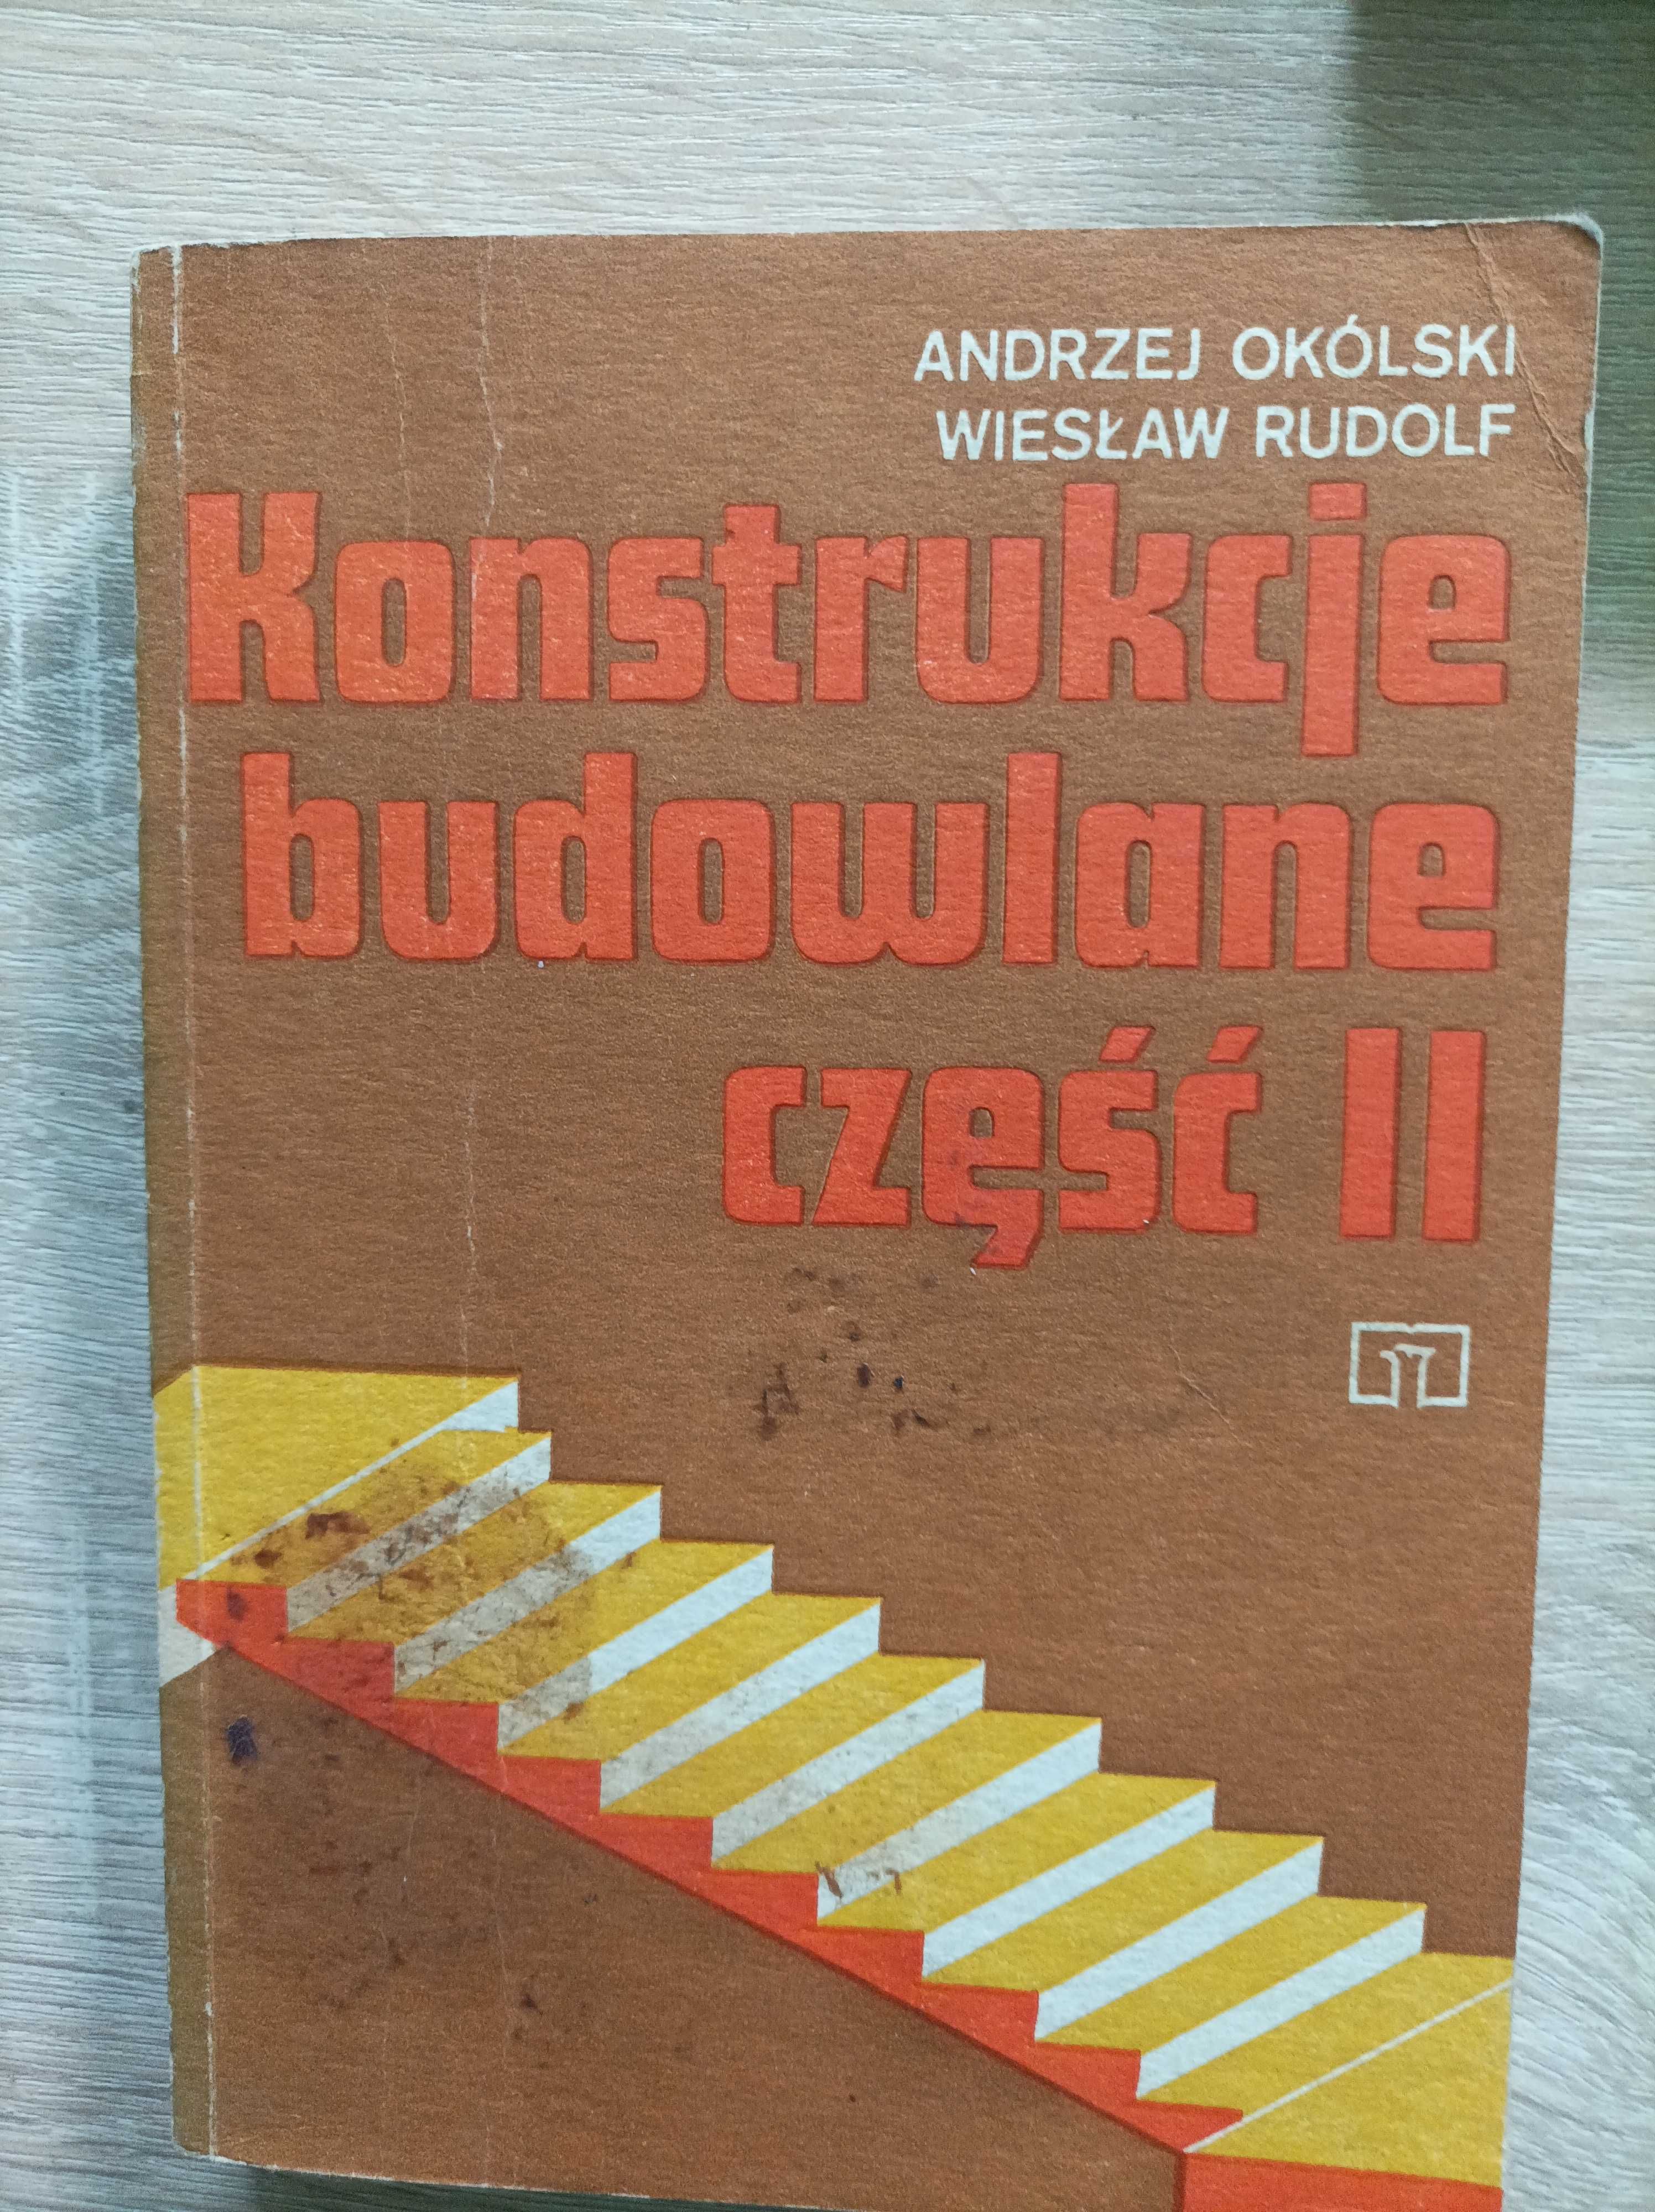 Andrzej Okólski - Konstrukcje Budowlane